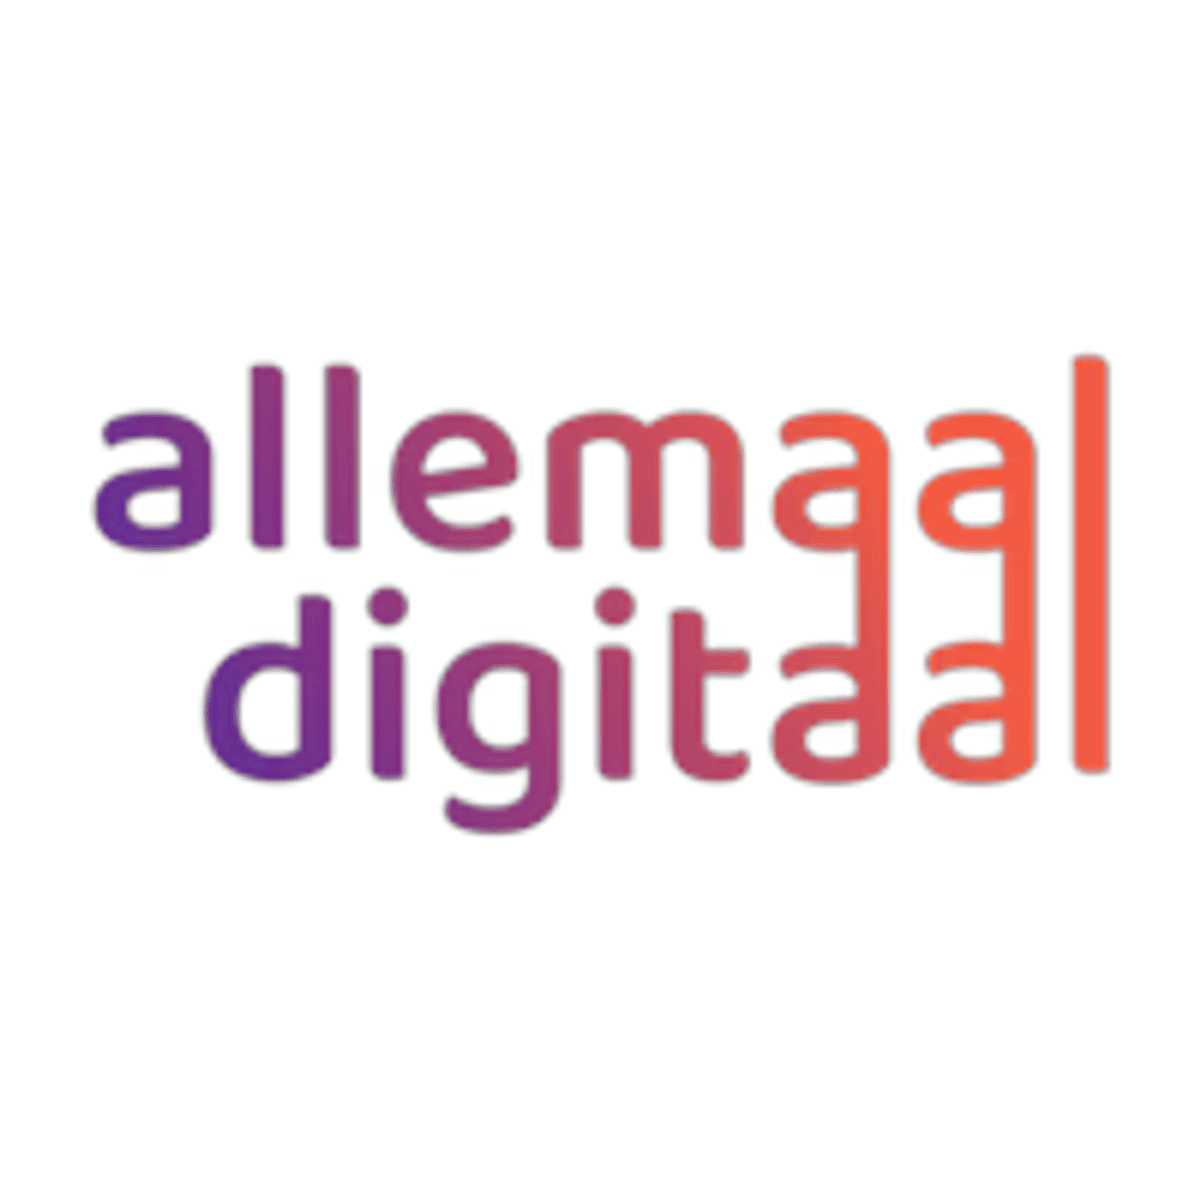 #allemaaldigitaal coordineert inzameling digitale apparaten voor kwetsbare groepen image